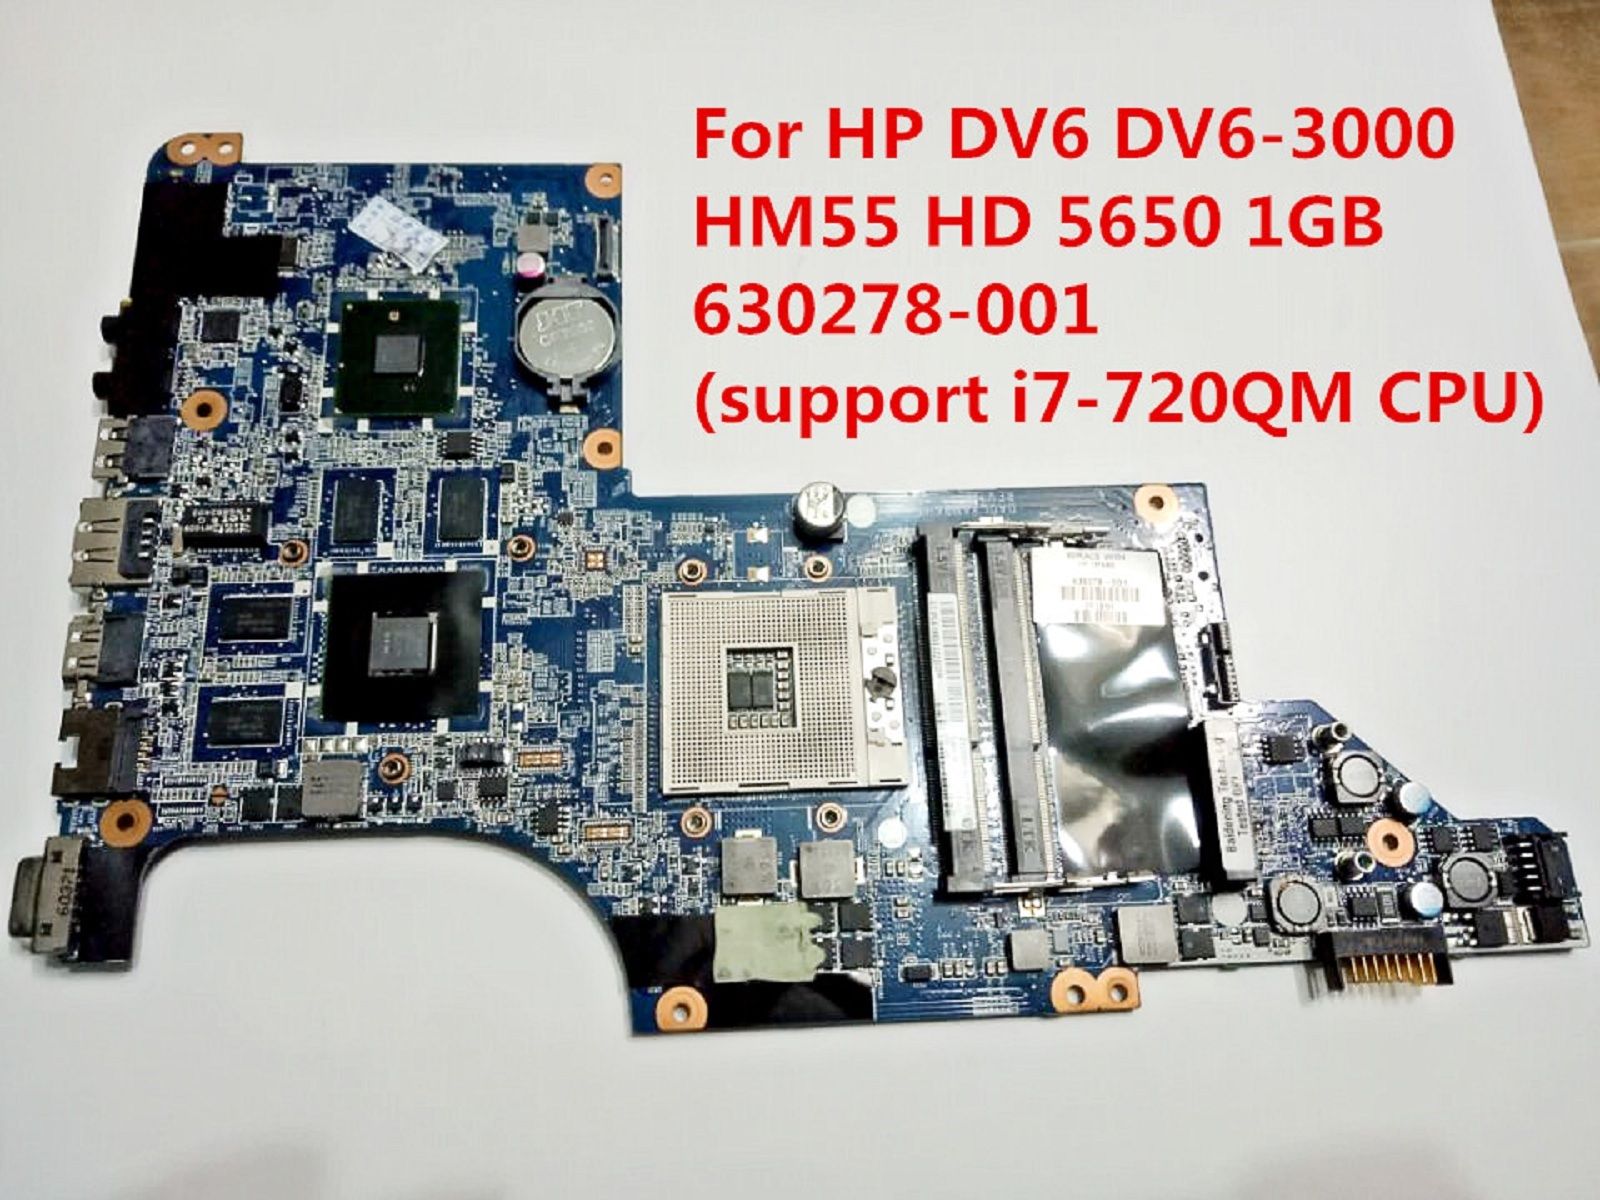 HP DV6 DV6-3000 Intel HM55 ATI 5650/1GB Motherboard 630278-001 DV6 - Click Image to Close